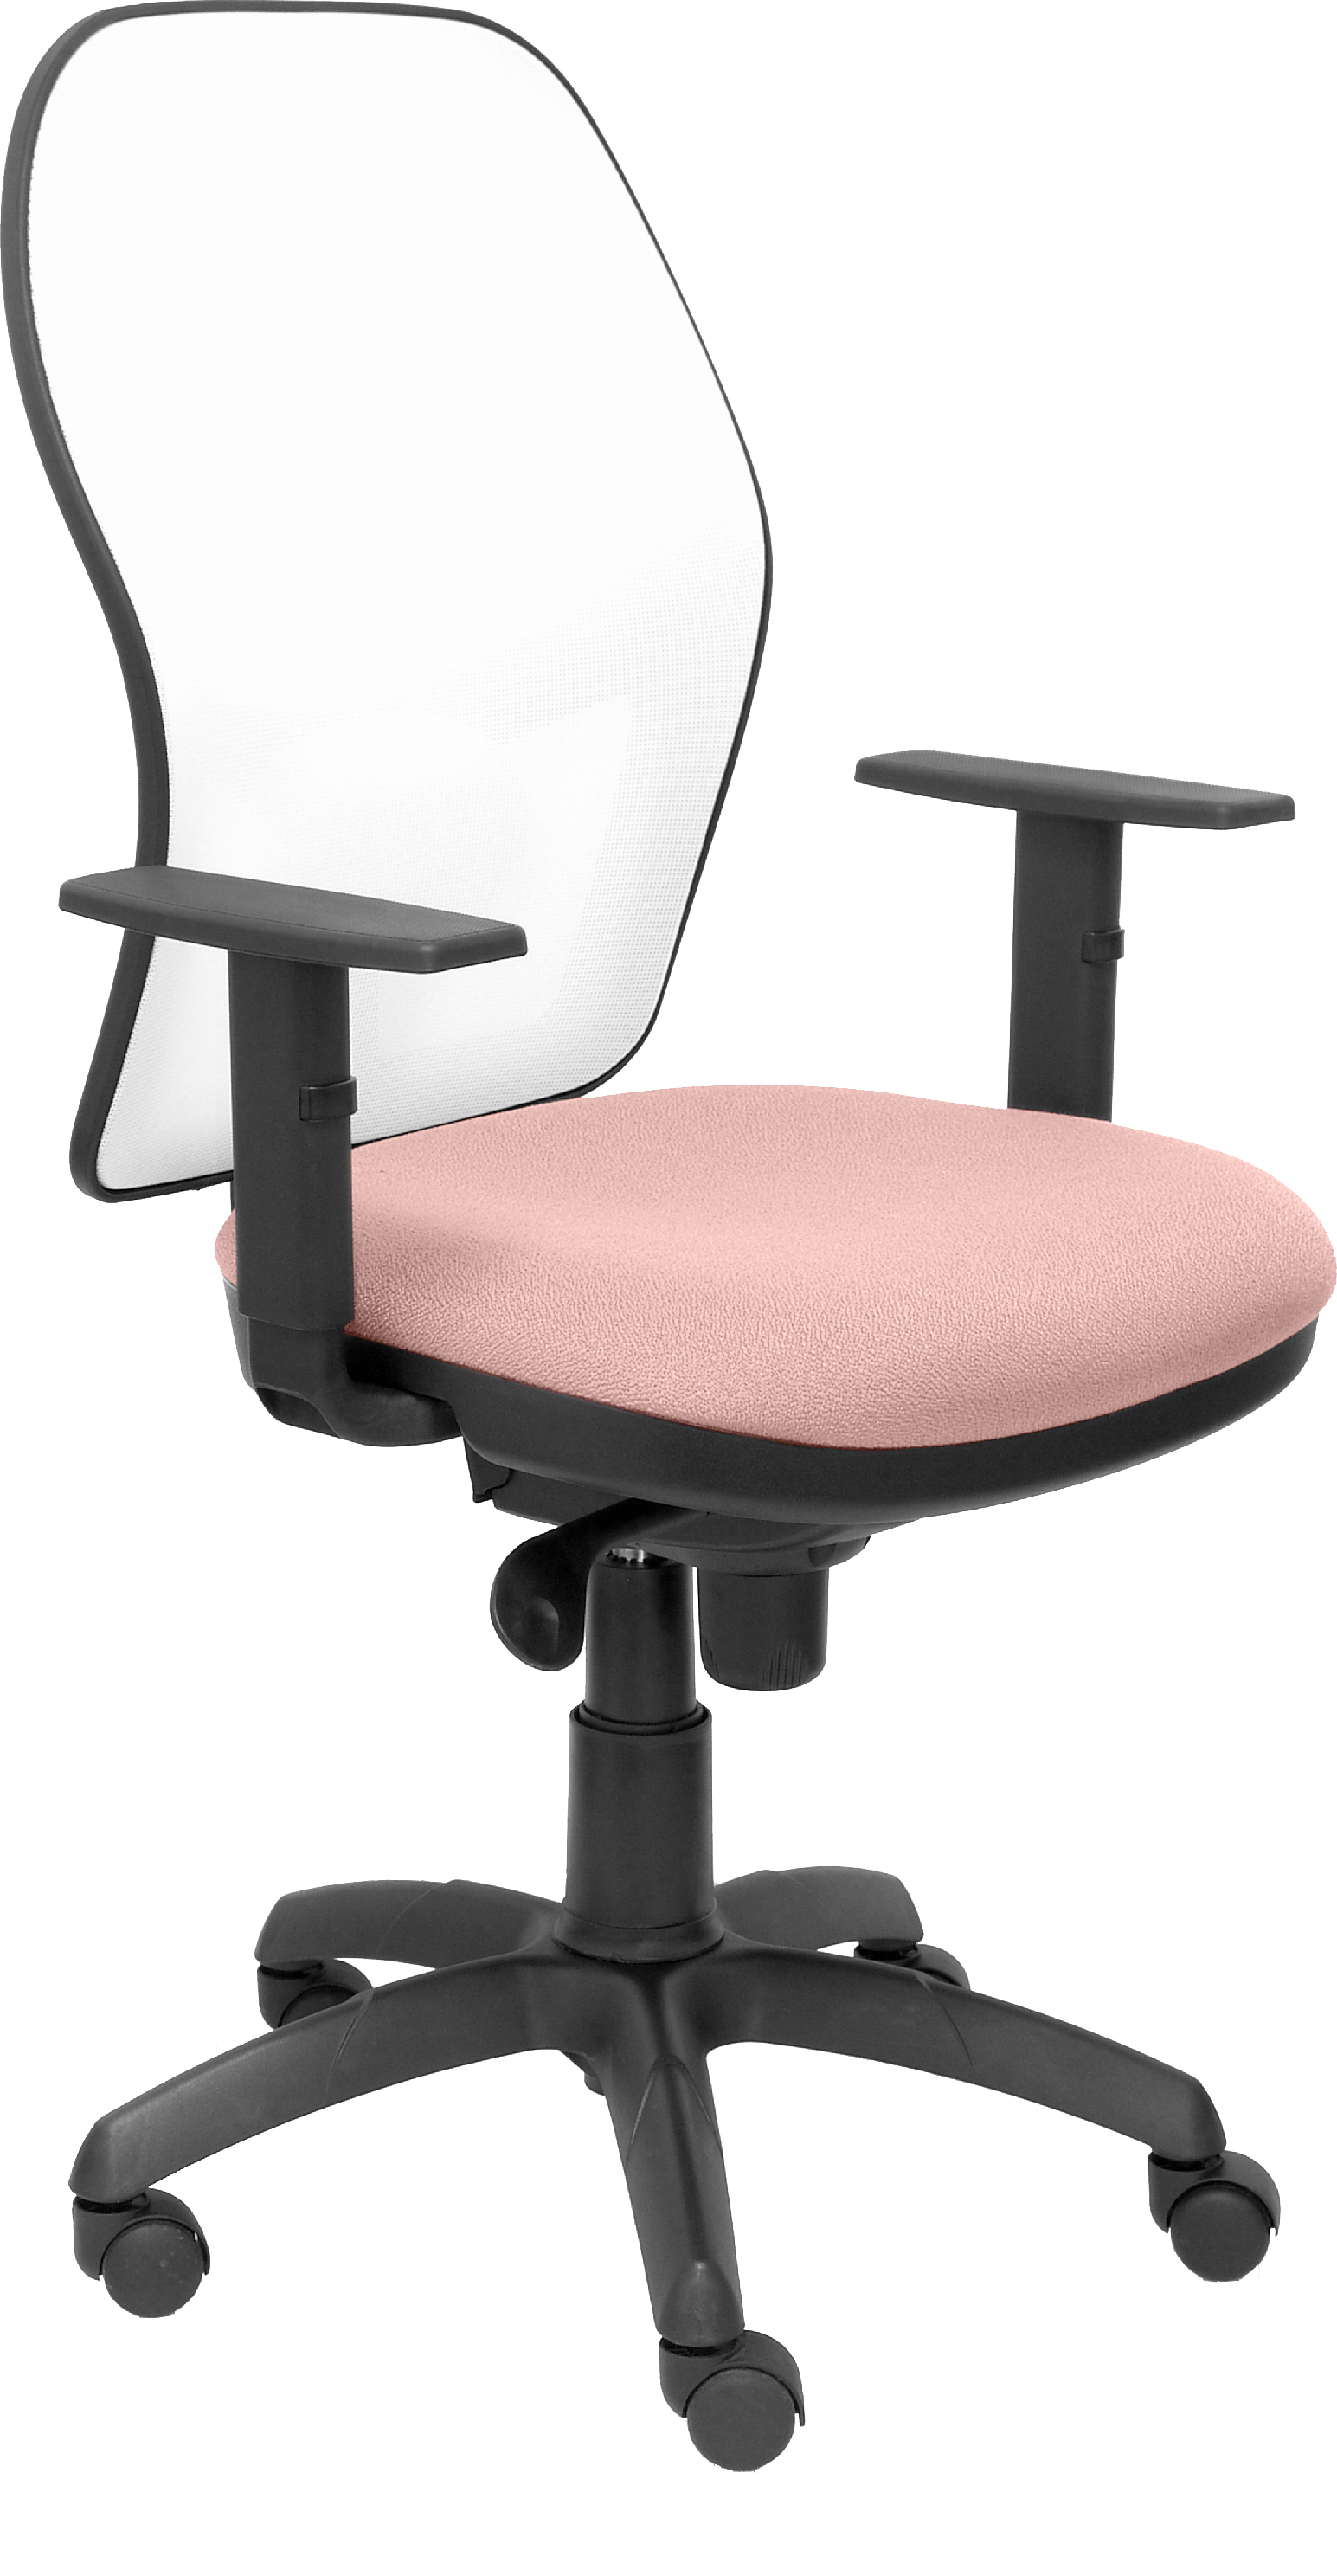 Silla De Escritorio operativa pyc jorquera rosa brazos ajustables malla oficina piqueras y crespo modelo tejido bali 2 blanca asiento